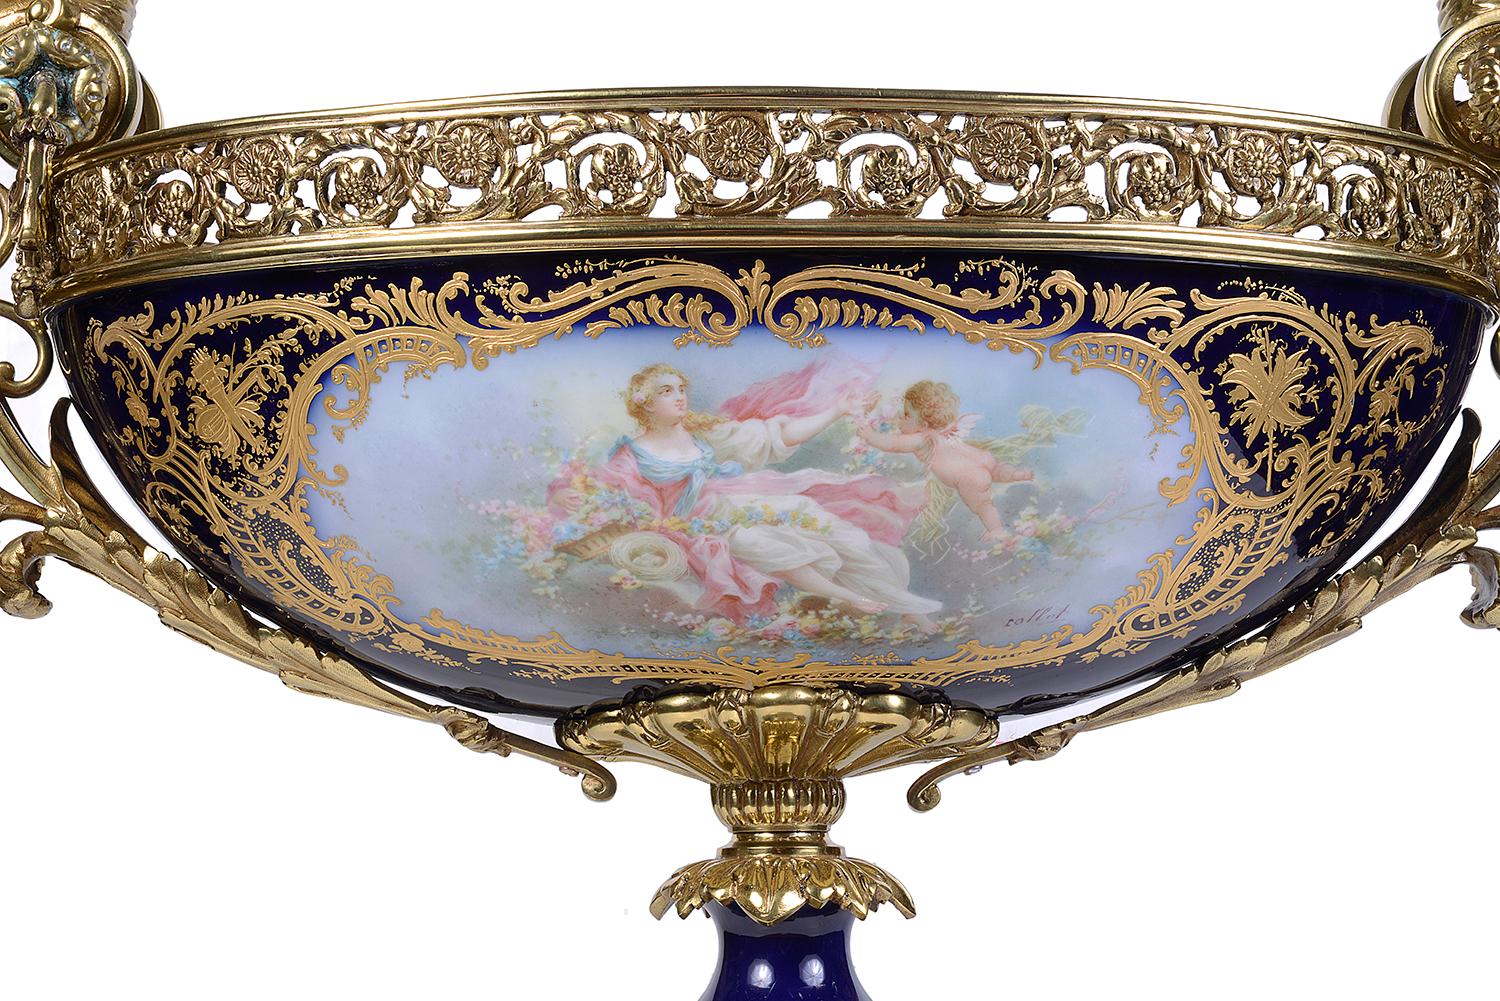 Comporte en porcelaine de style Sèvres de bonne qualité, datant de la fin du XIXe siècle, avec des poignées montées sur des femmes classiques en bronze doré de chaque côté, au-dessus d'un col percé, un fond bleu cobalt avec une décoration dorée, des